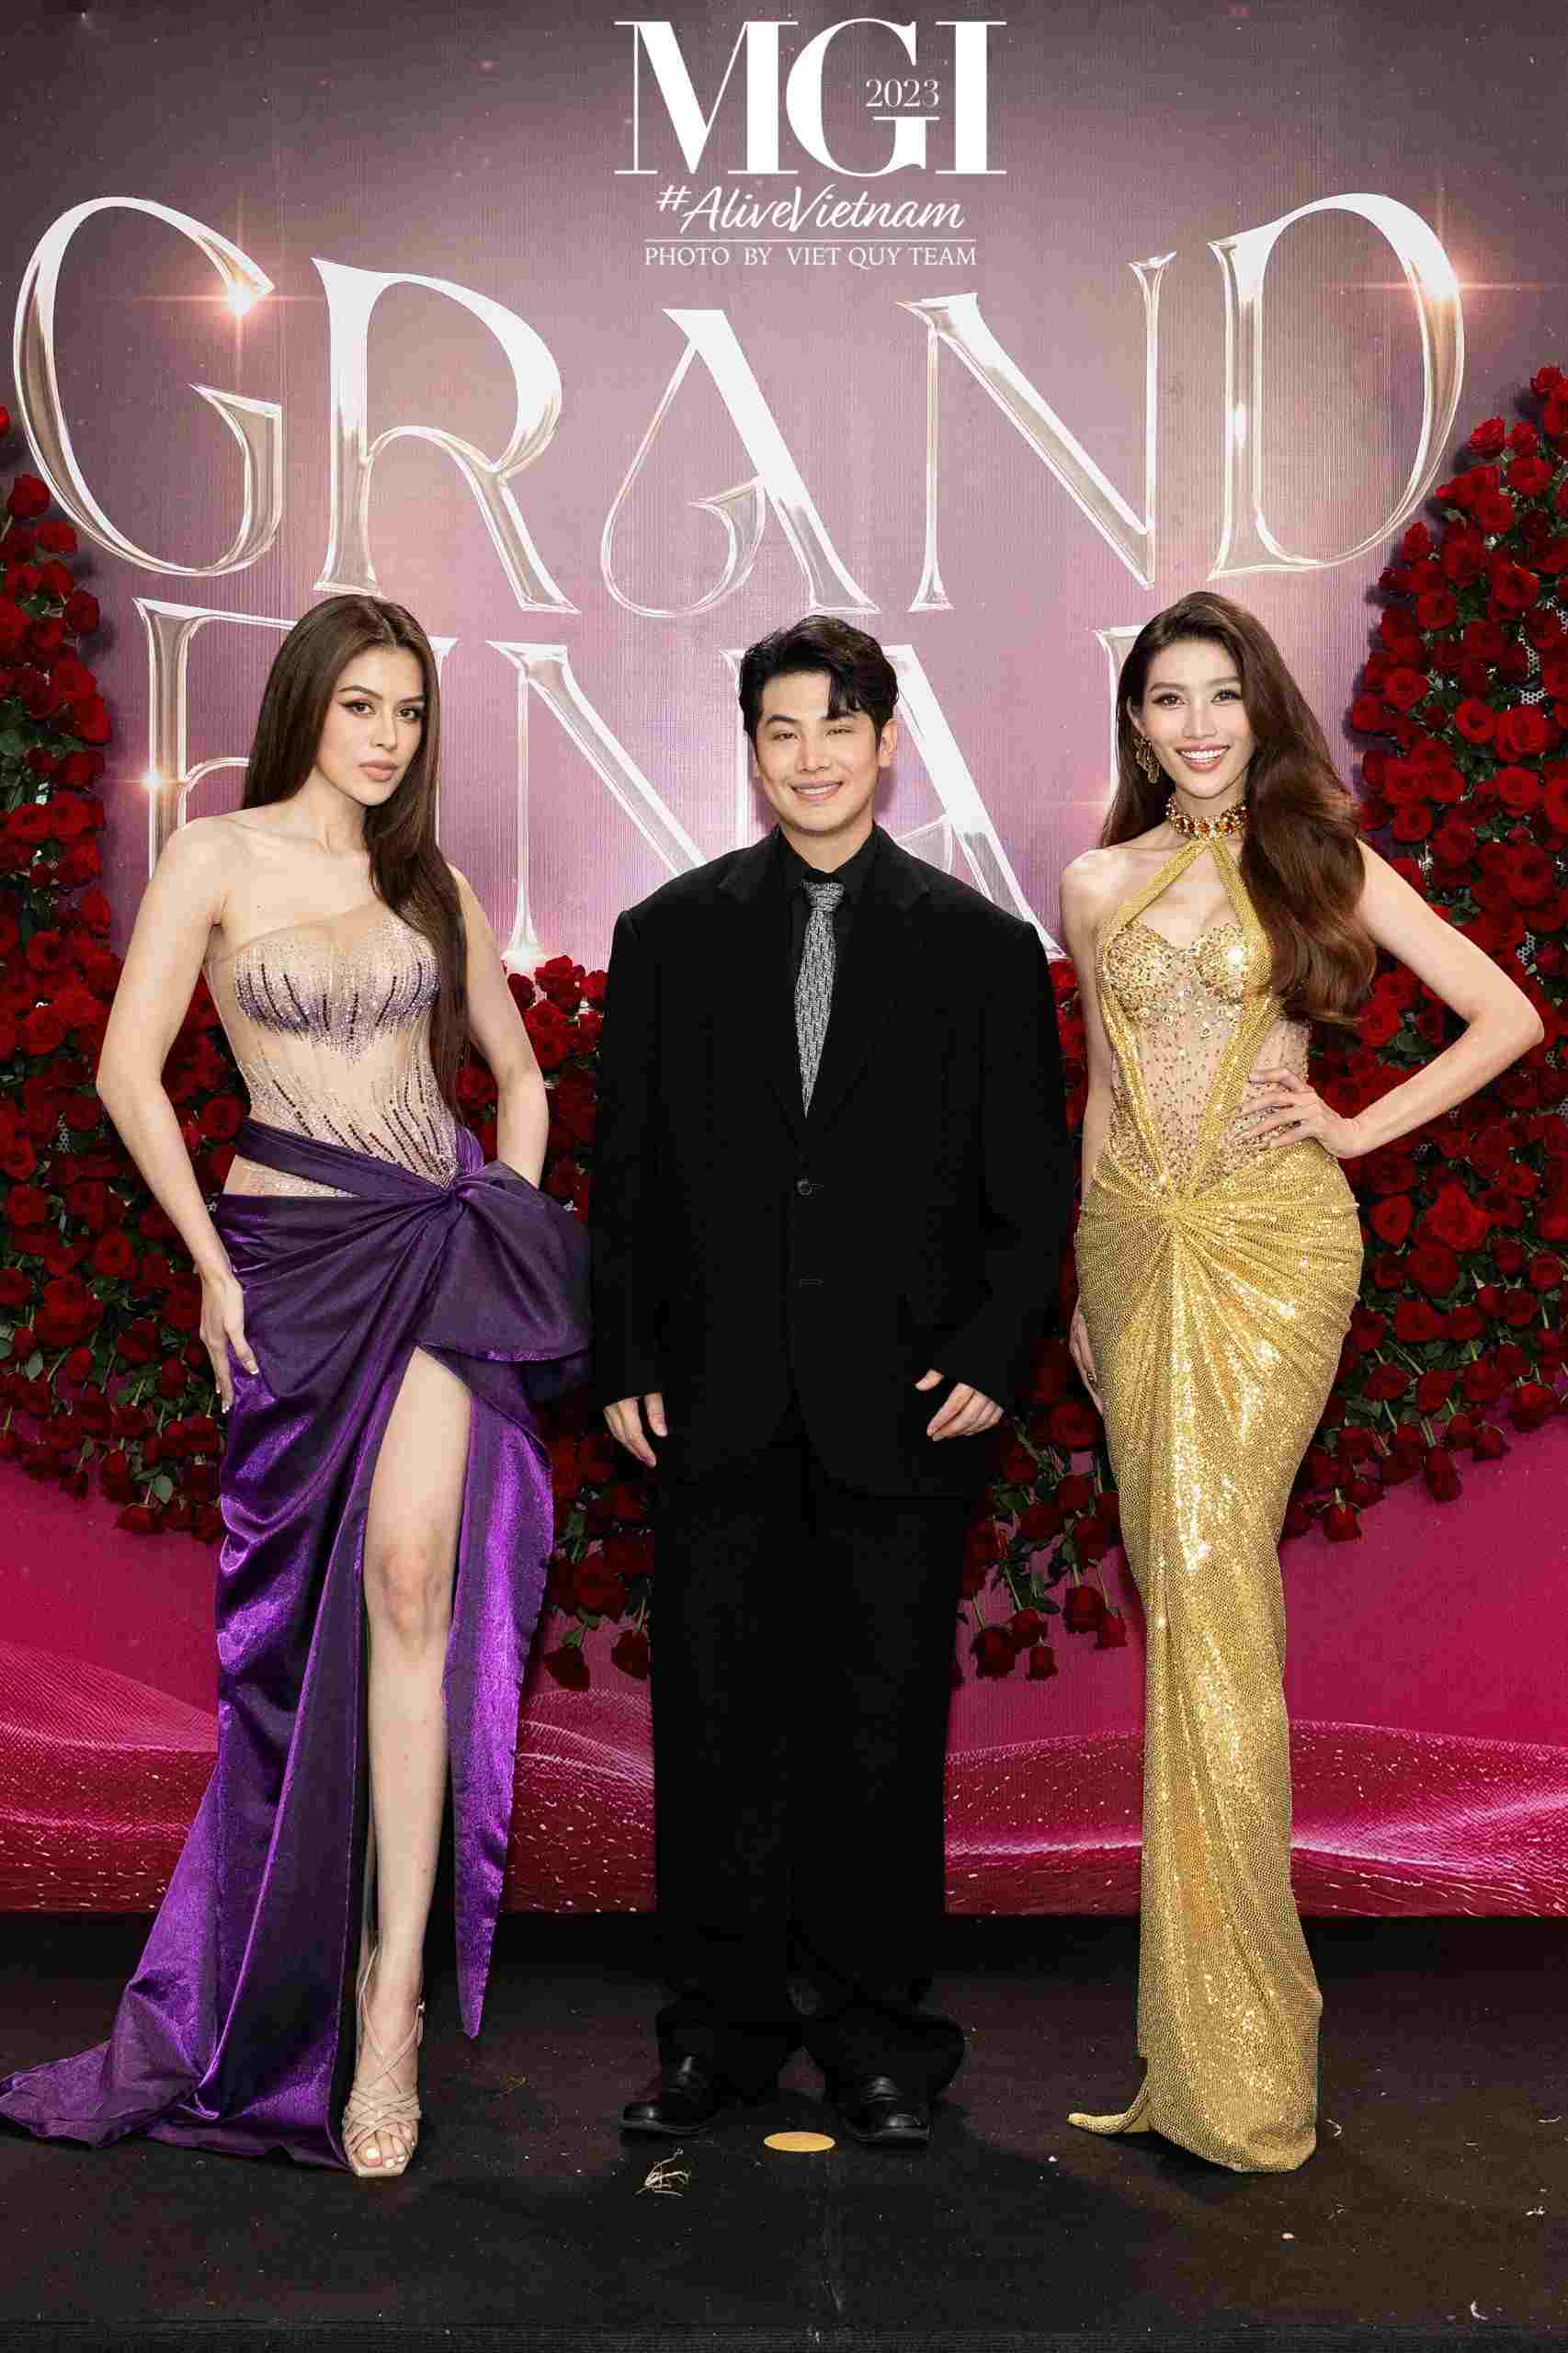 Đặc biệt, thảm đỏ của chung kết Miss Grand International 2023 được dẫn dắt bởi Á hậu Chế Nguyễn Quỳnh Châu. Cô nàng chọn cho mình trang phục vàng gold đầy bắt mắt, cô dẫn thảm đỏ cùng MC Champmie và Á hậu Roberta. 